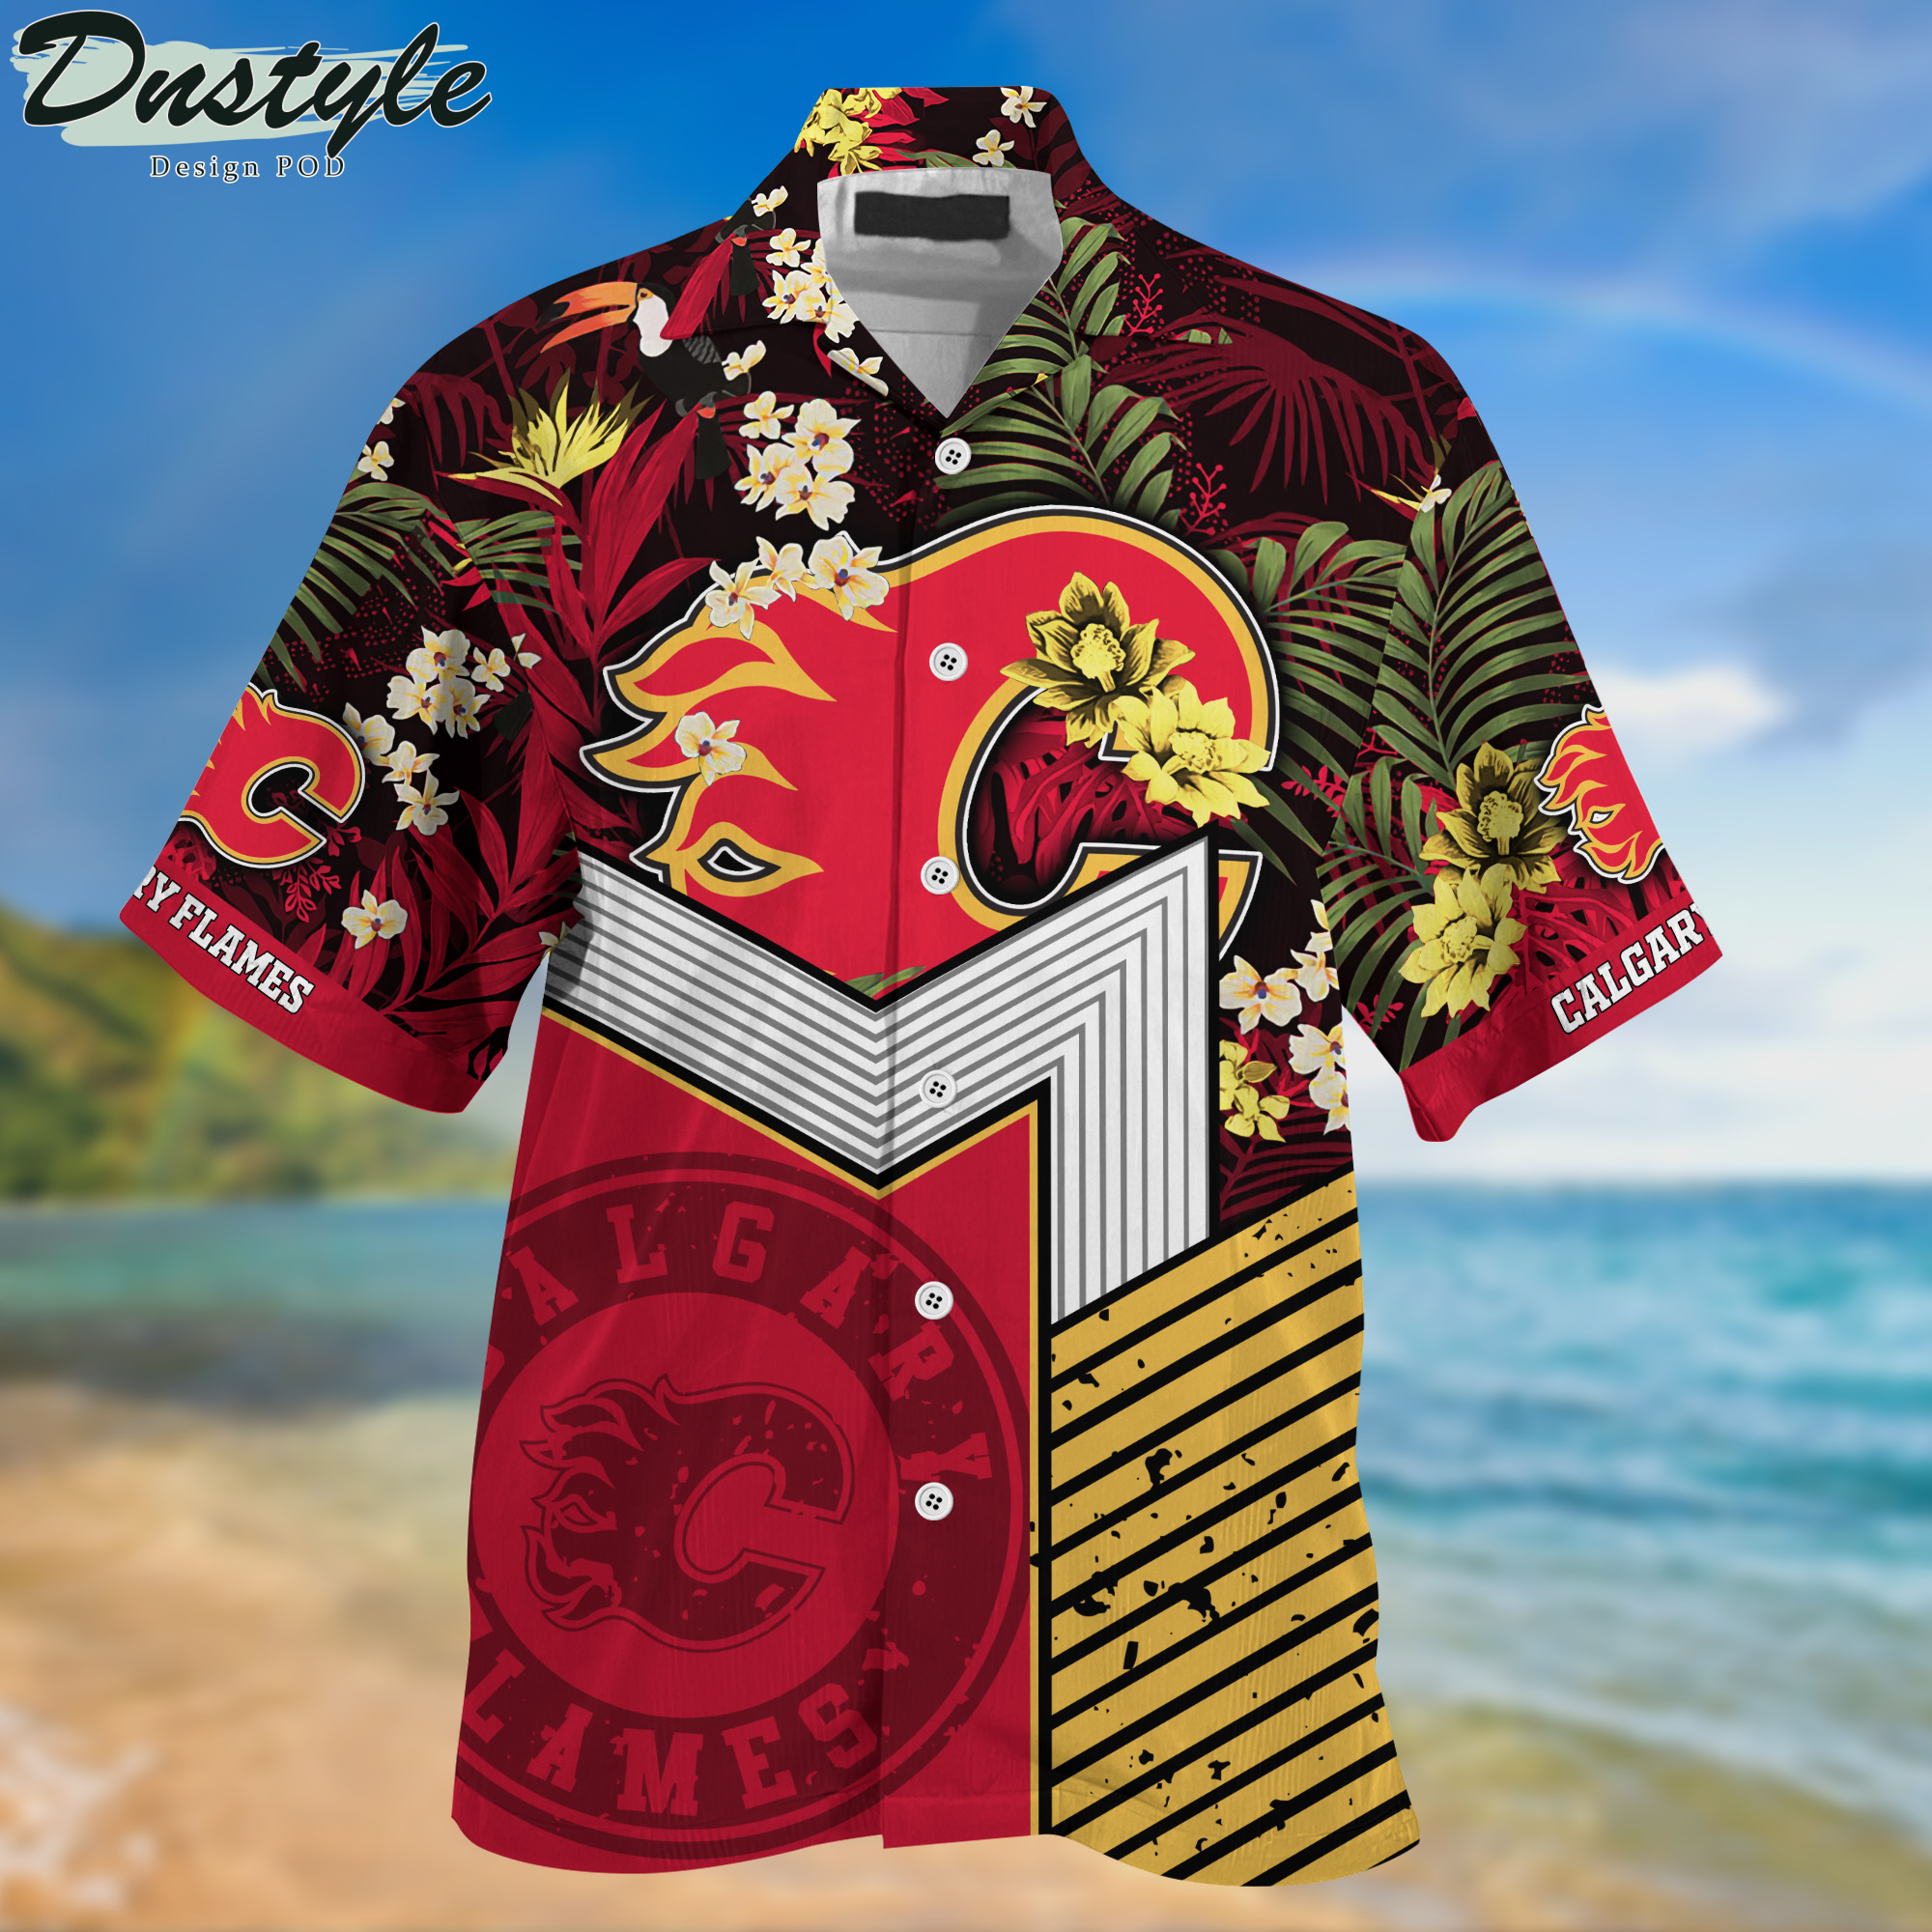 Calgary Flames Hawaii Shirt And Shorts New Collection